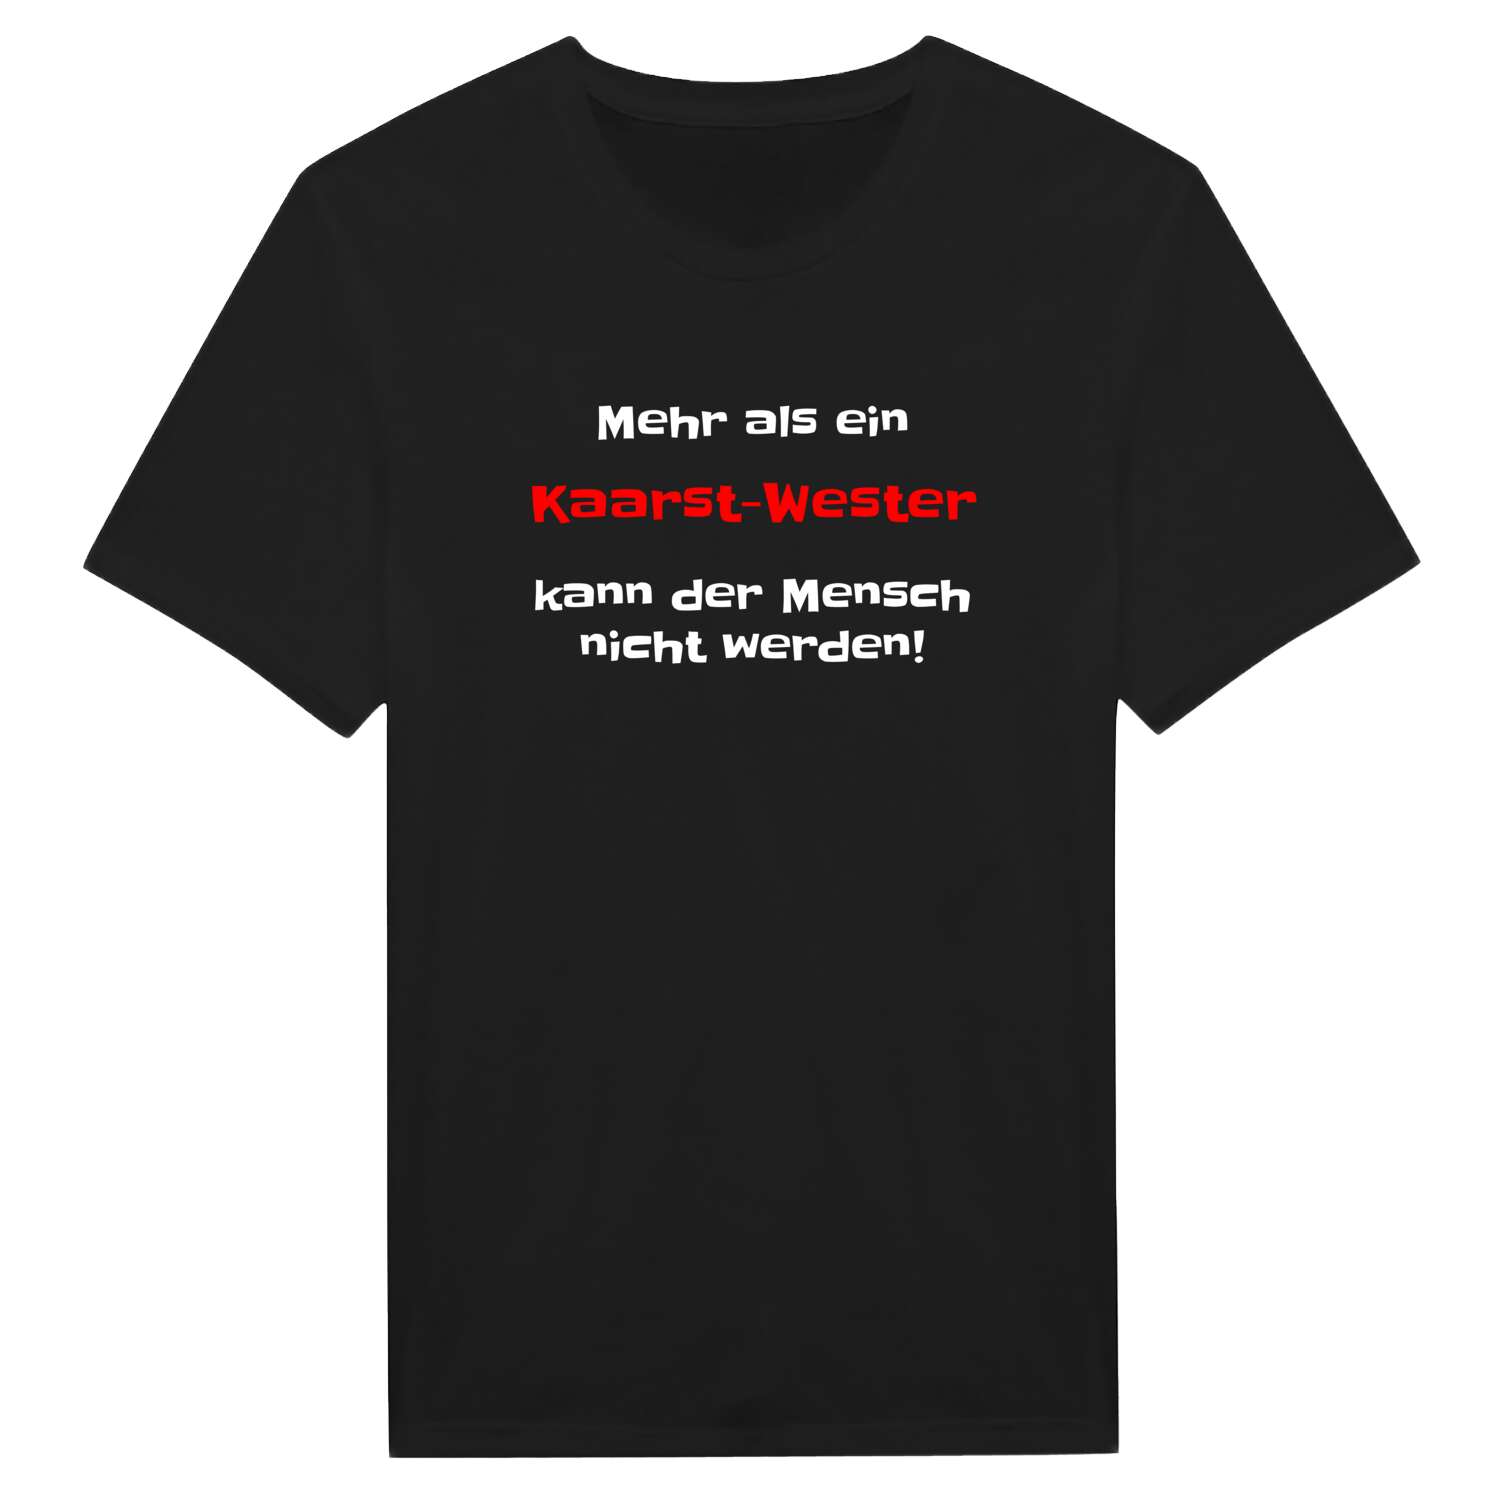 Kaarst-West T-Shirt »Mehr als ein«